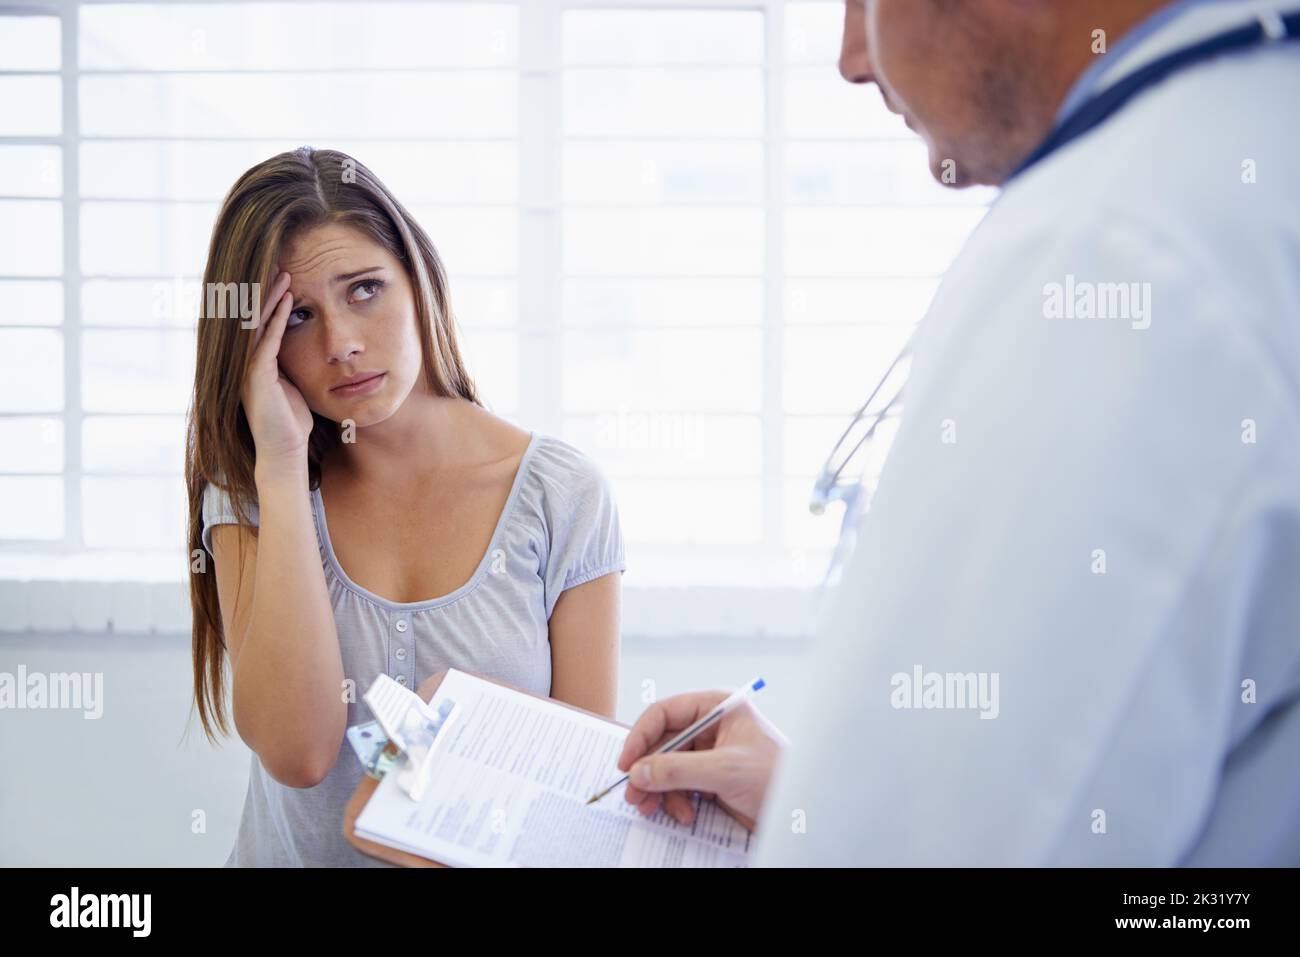 Also, wie lange haben Sie schon diese Kopfschmerzen. Eine junge Frau, die während eines Arztbesuches besorgt aussieht. Stockfoto